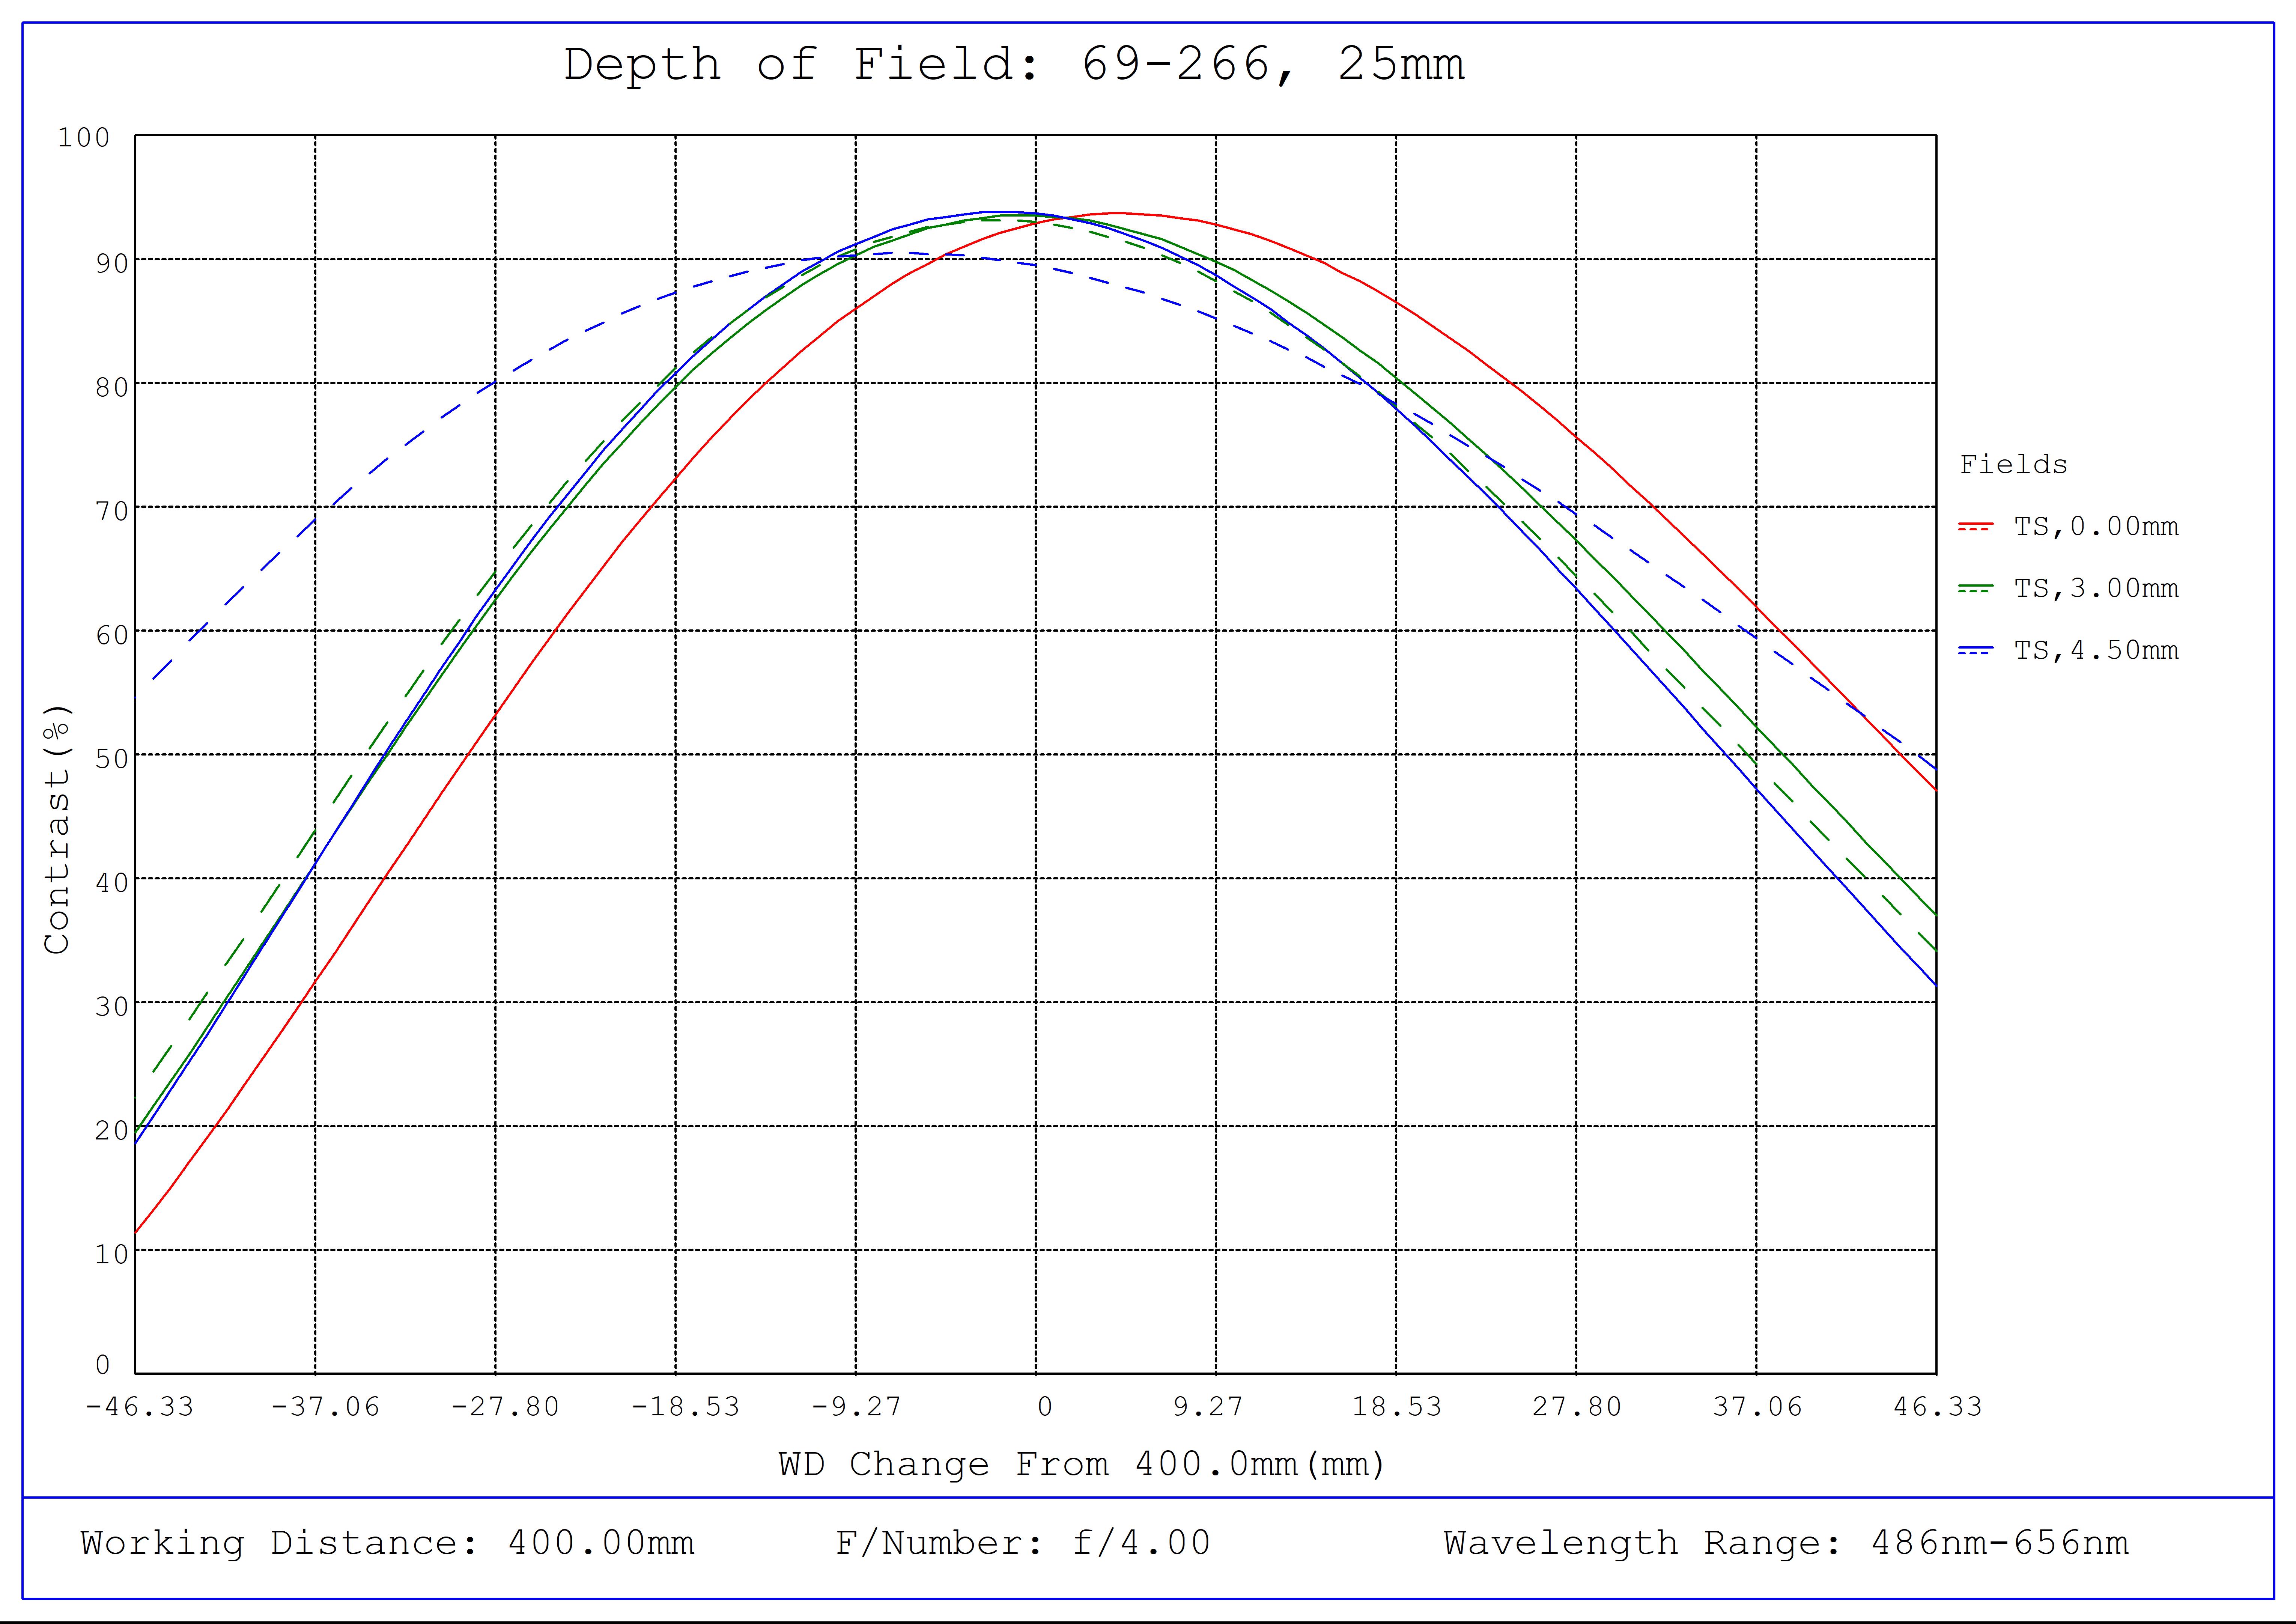 #69-266, 25mm FL f/4, Blue Series M12 Lens, Depth of Field Plot, 400mm Working Distance, f4